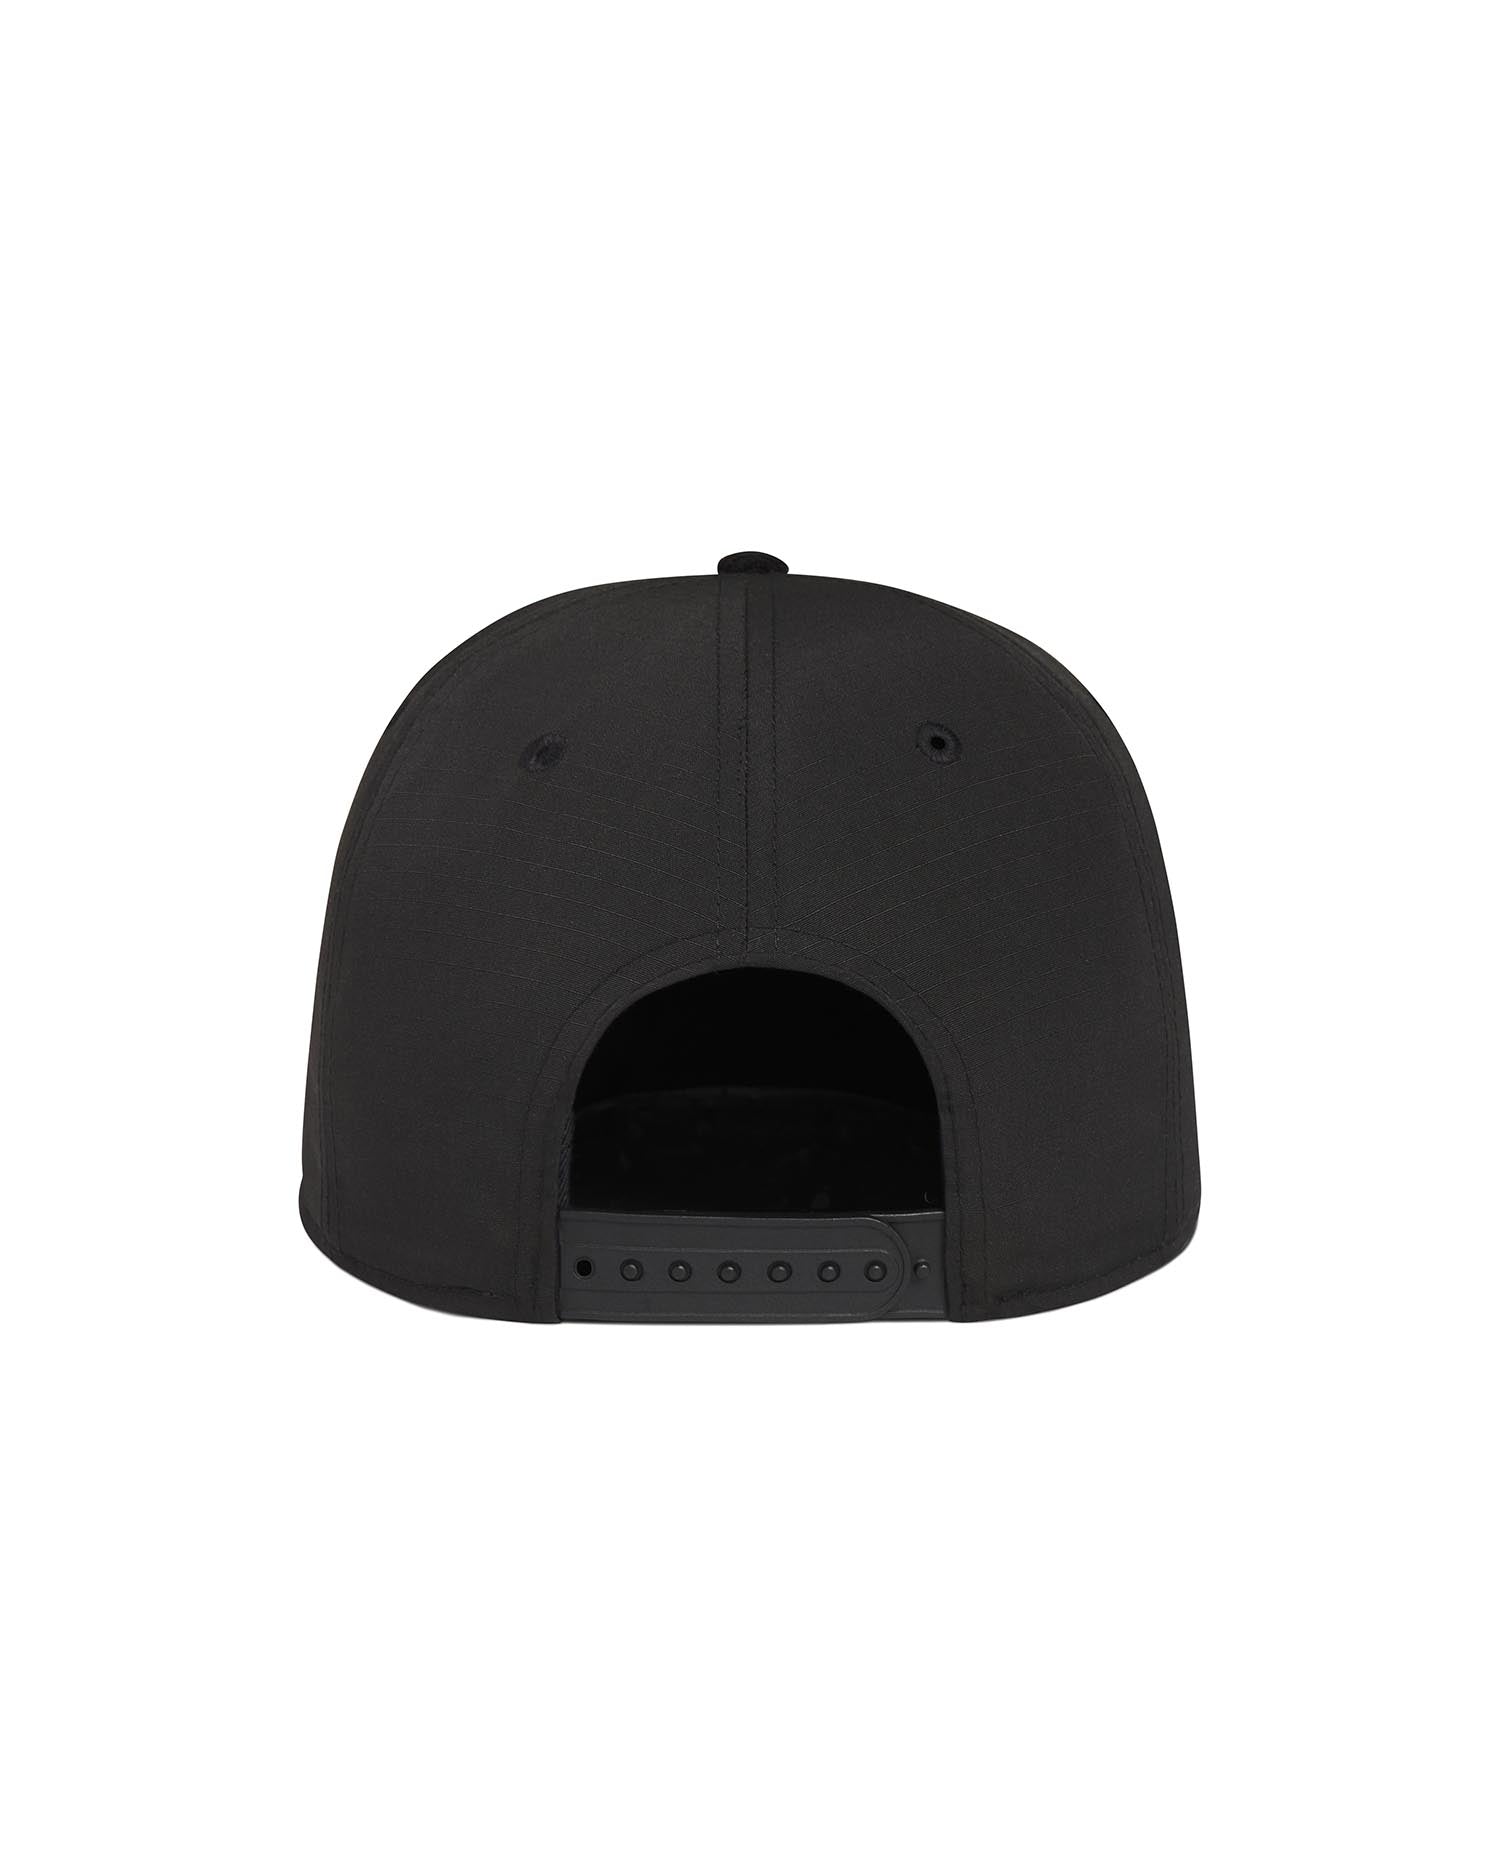 MM4756 Black Hat - Sportiqe Apparel 